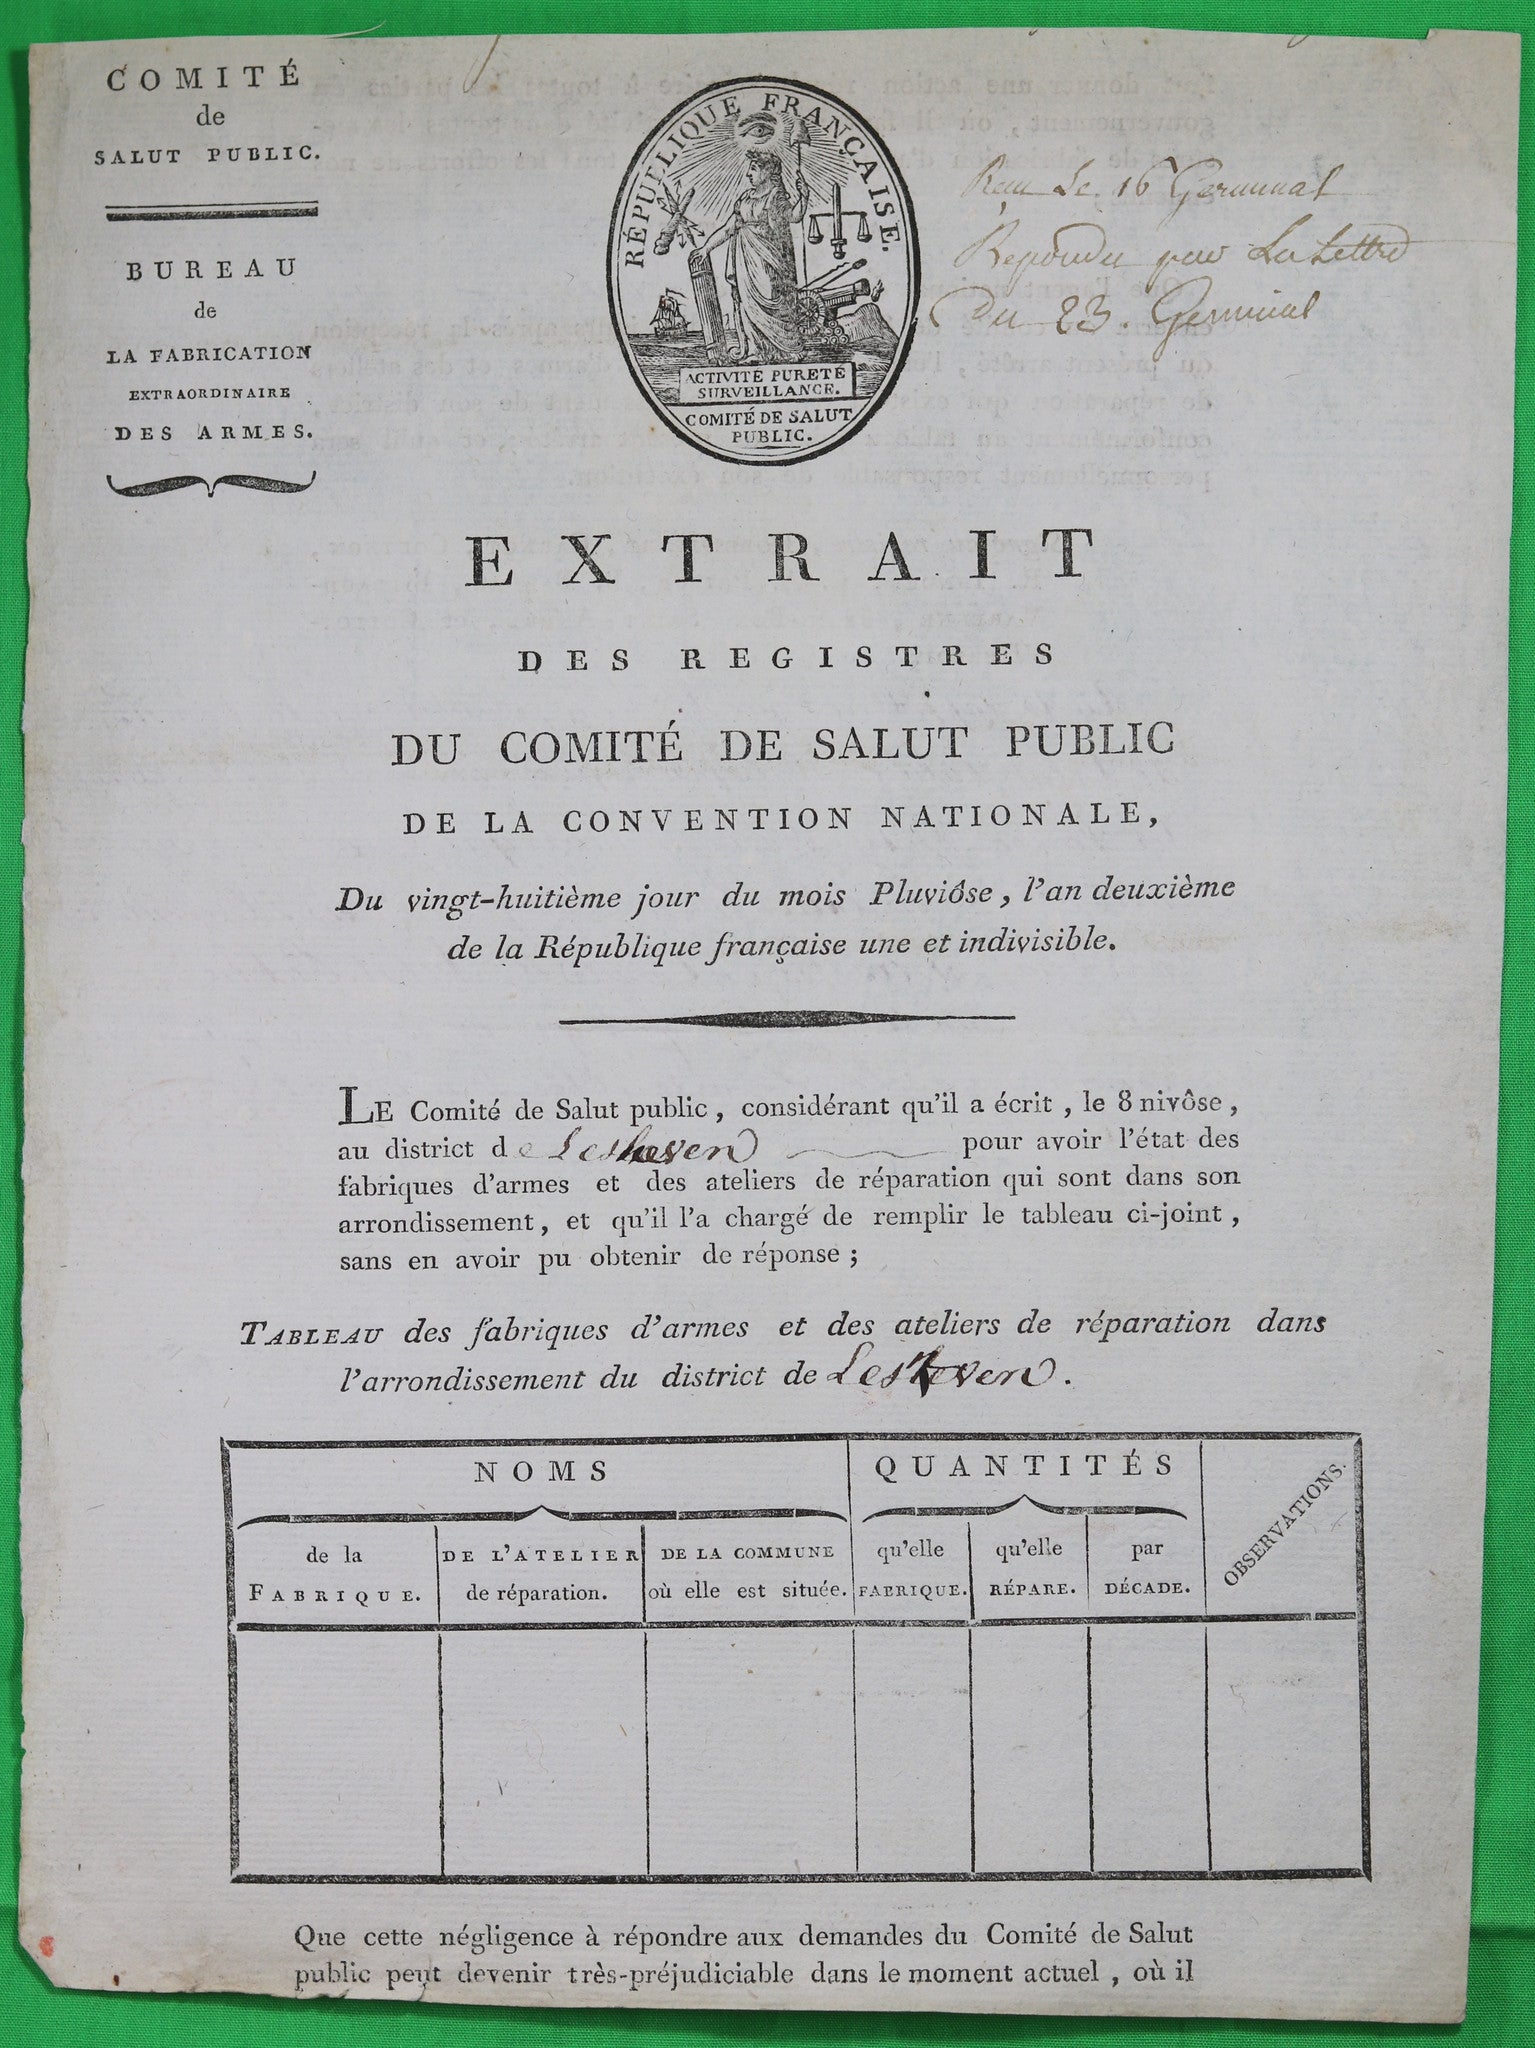 1794 requête du Comité de Salut Public pour information, avec une menace!